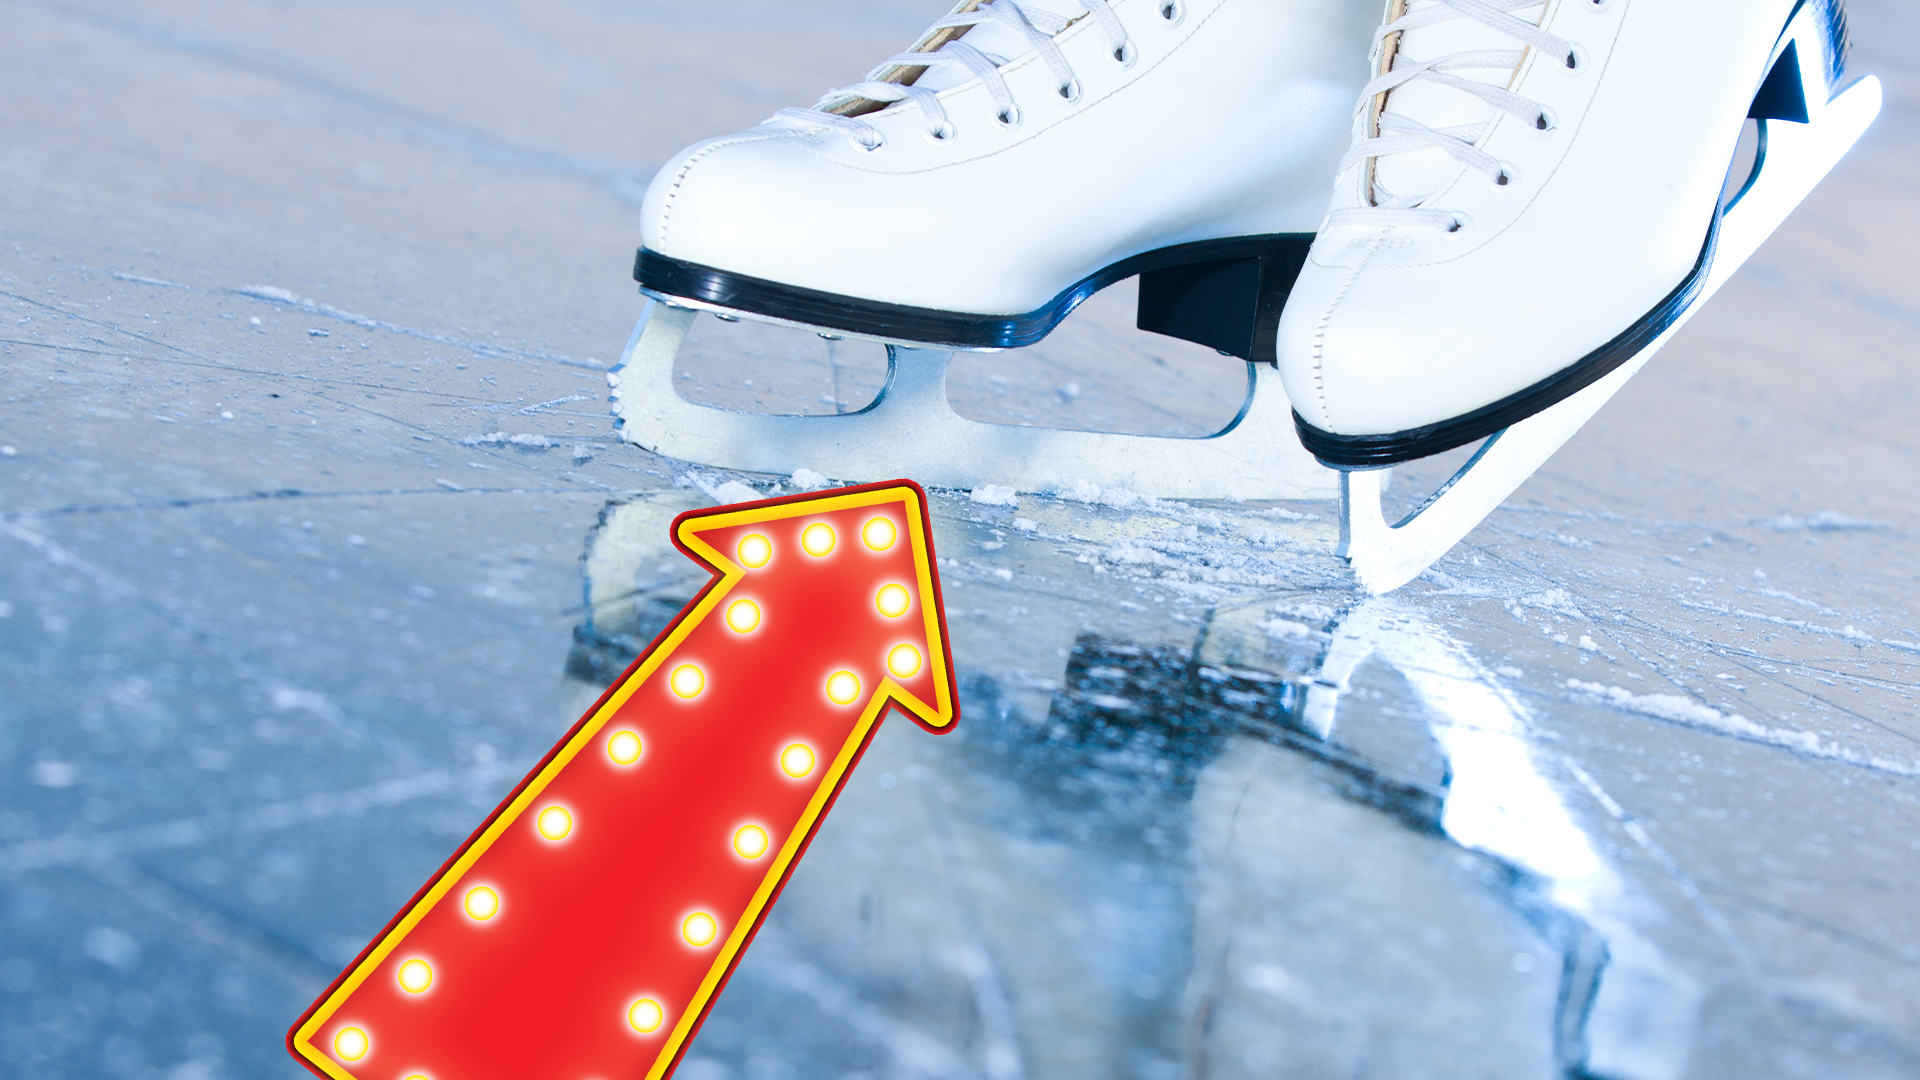 Ice skates on ice and arrow